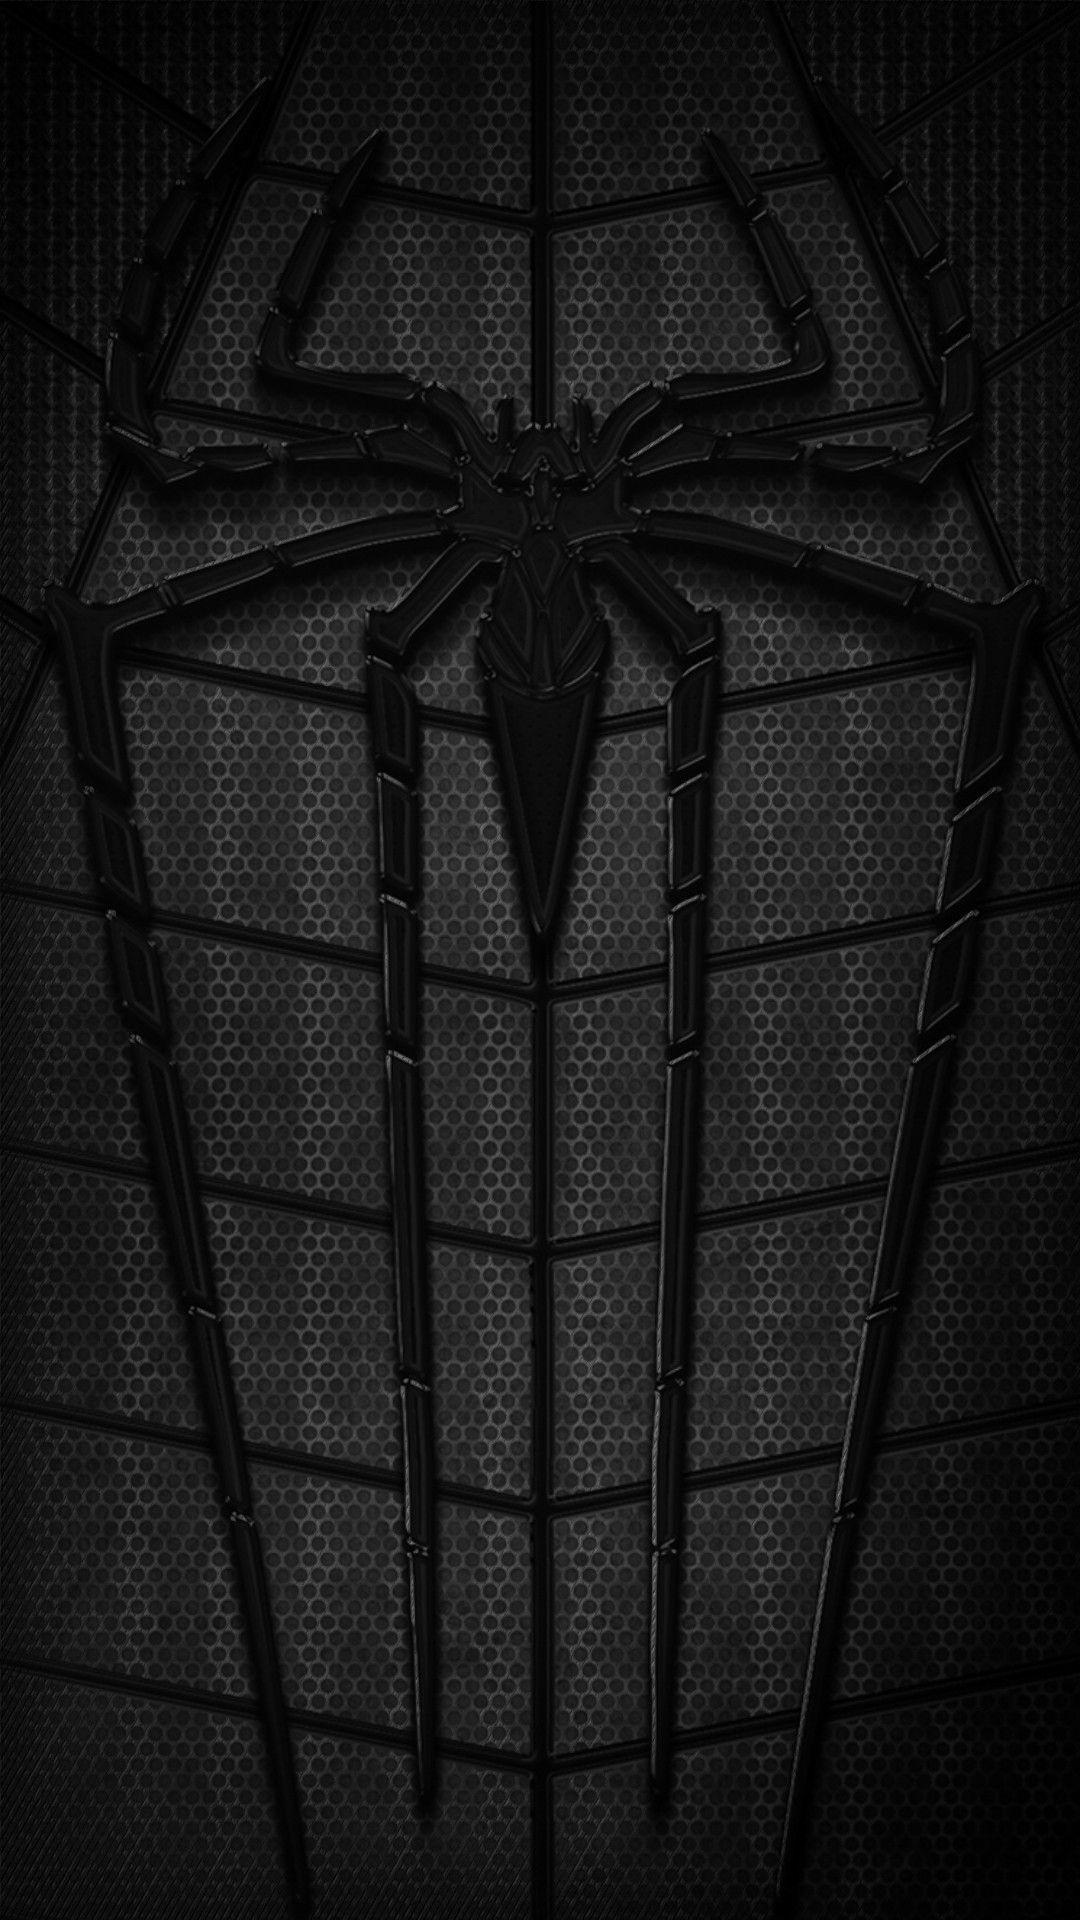 Black Spider Man Phone Wallpaper Free Black Spider Man